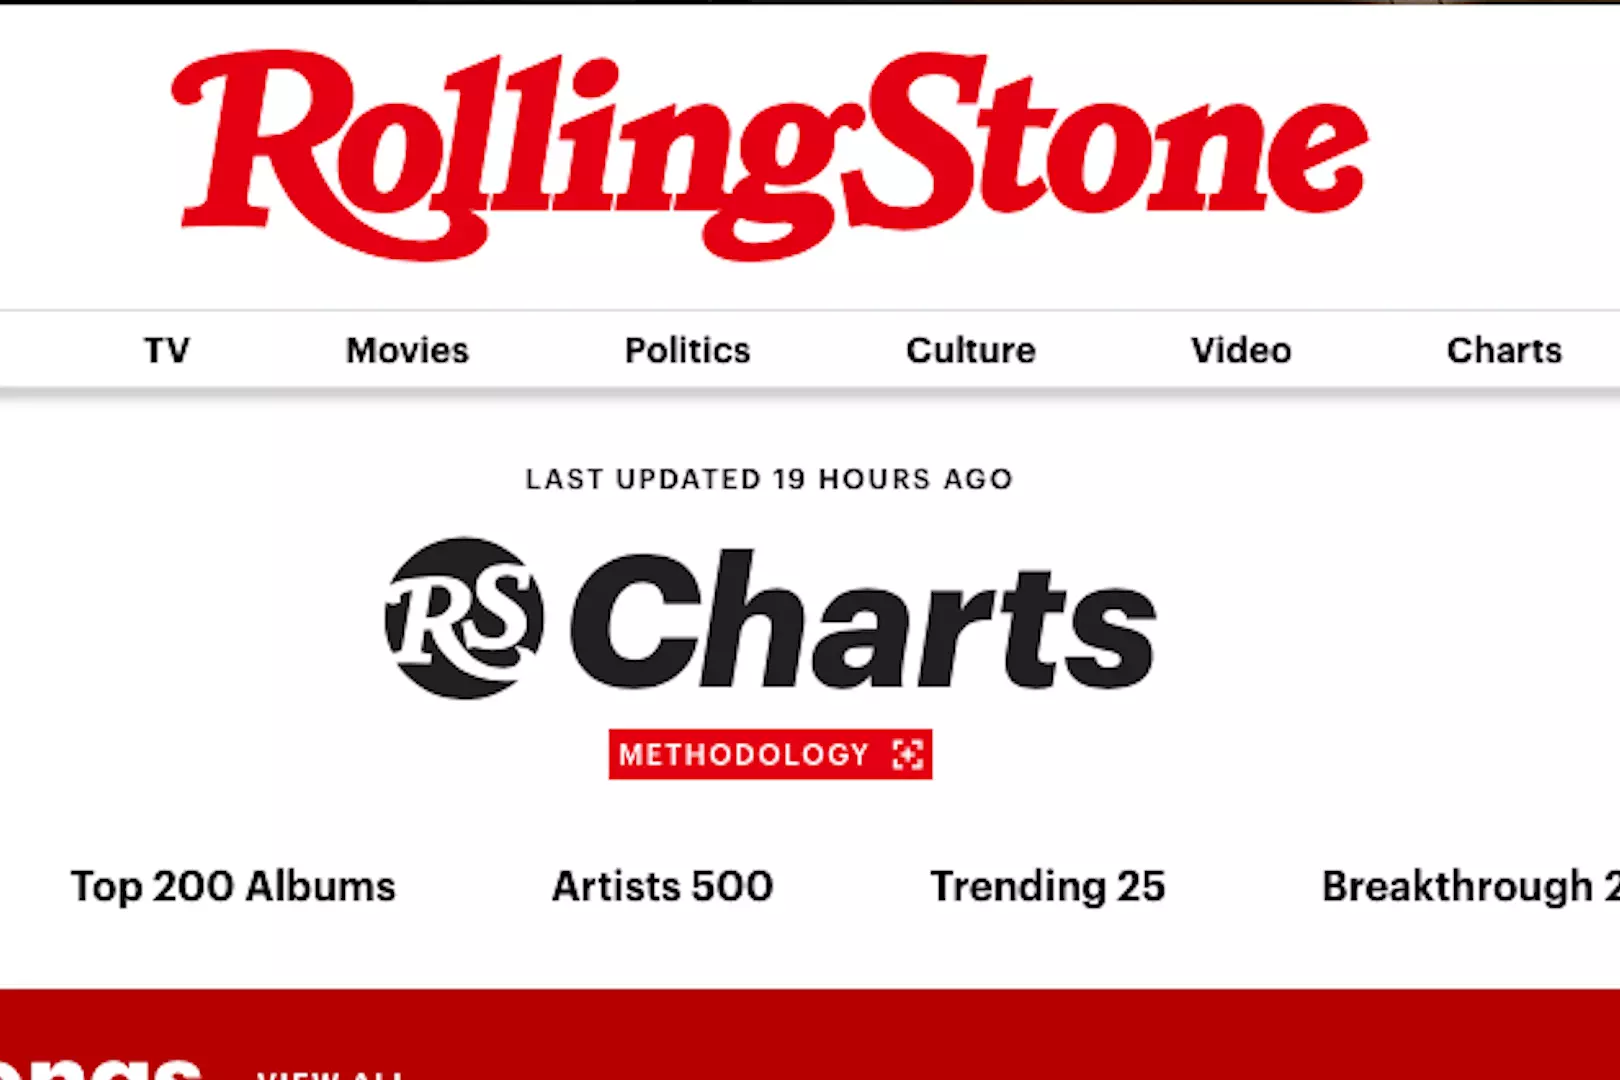 Rolling Stone Magazine Charts